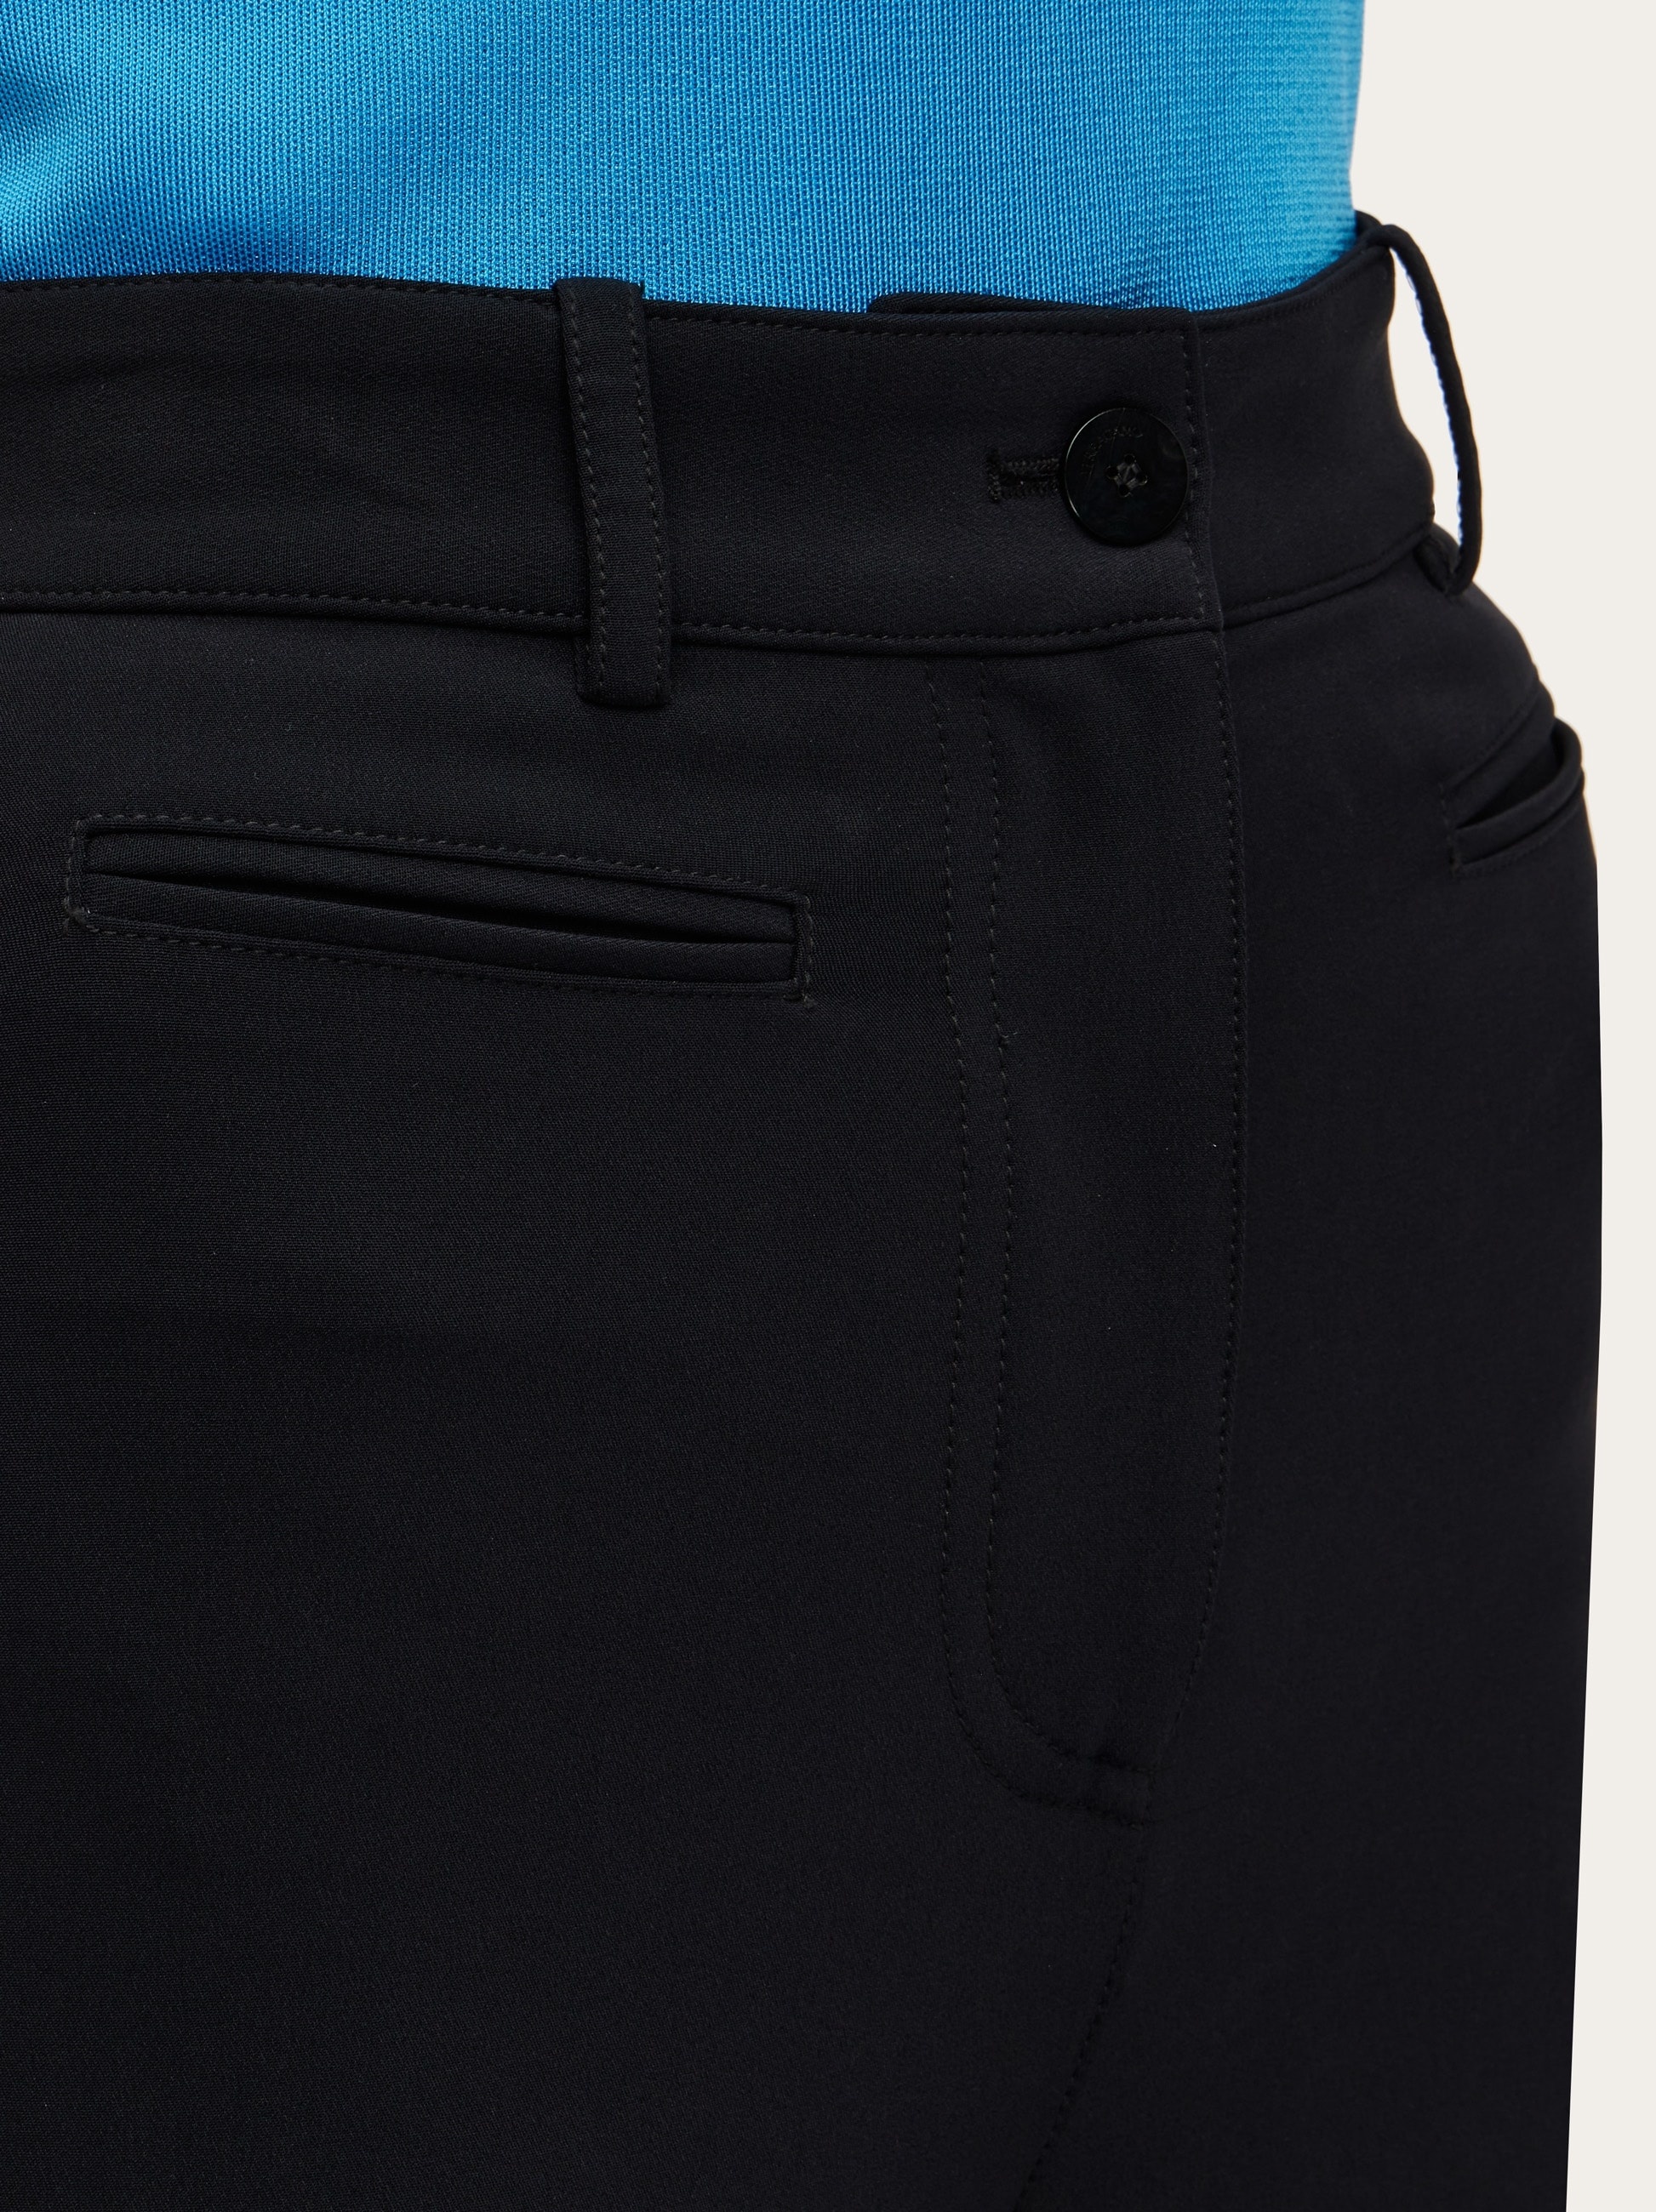 Slim fit five pocket trouser - 6